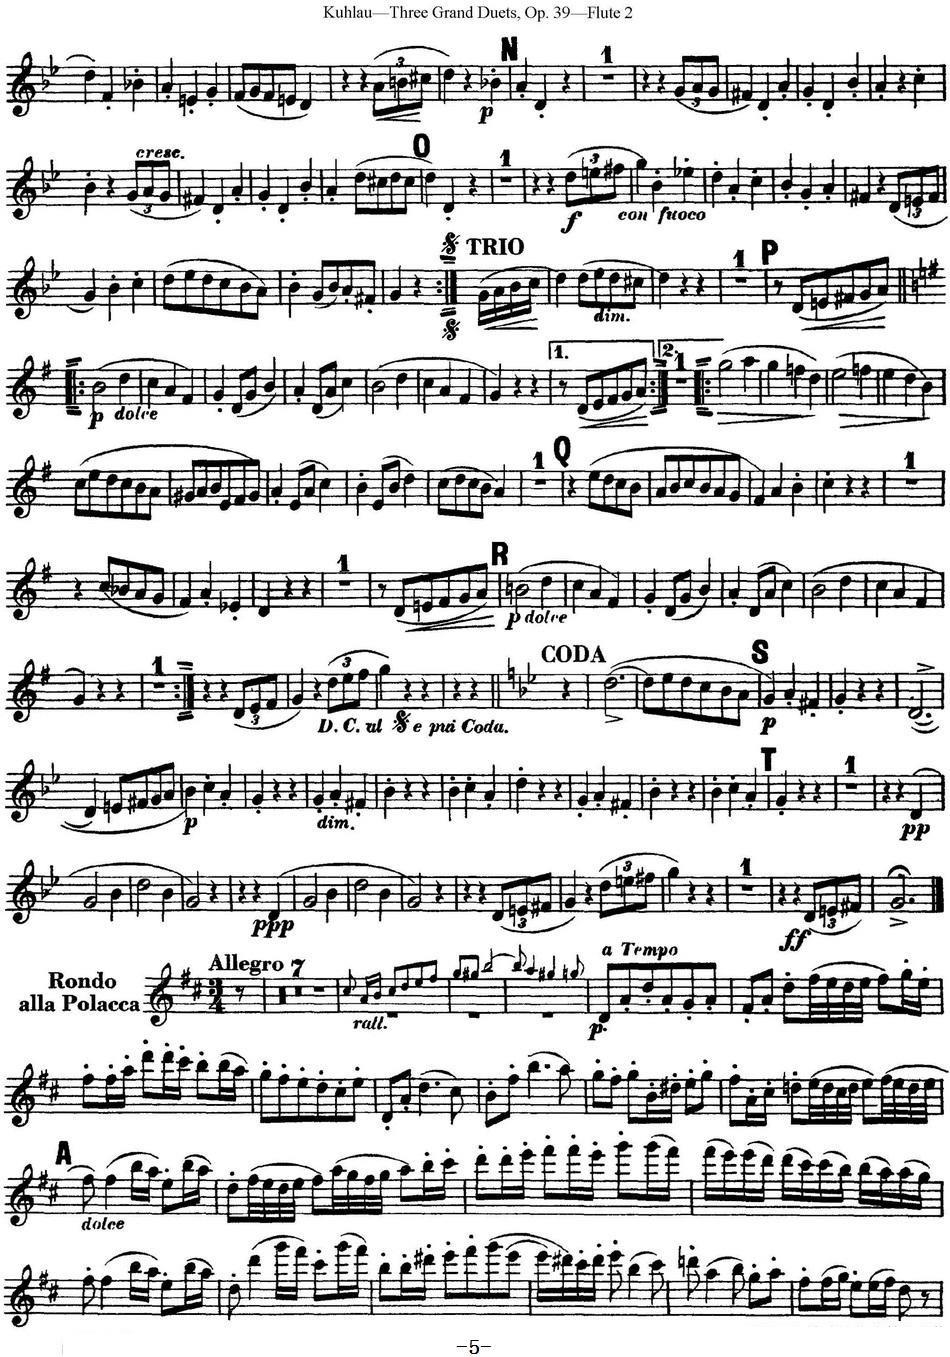 《库劳长笛二重奏大练习曲Op.39——Flute 2》长笛谱